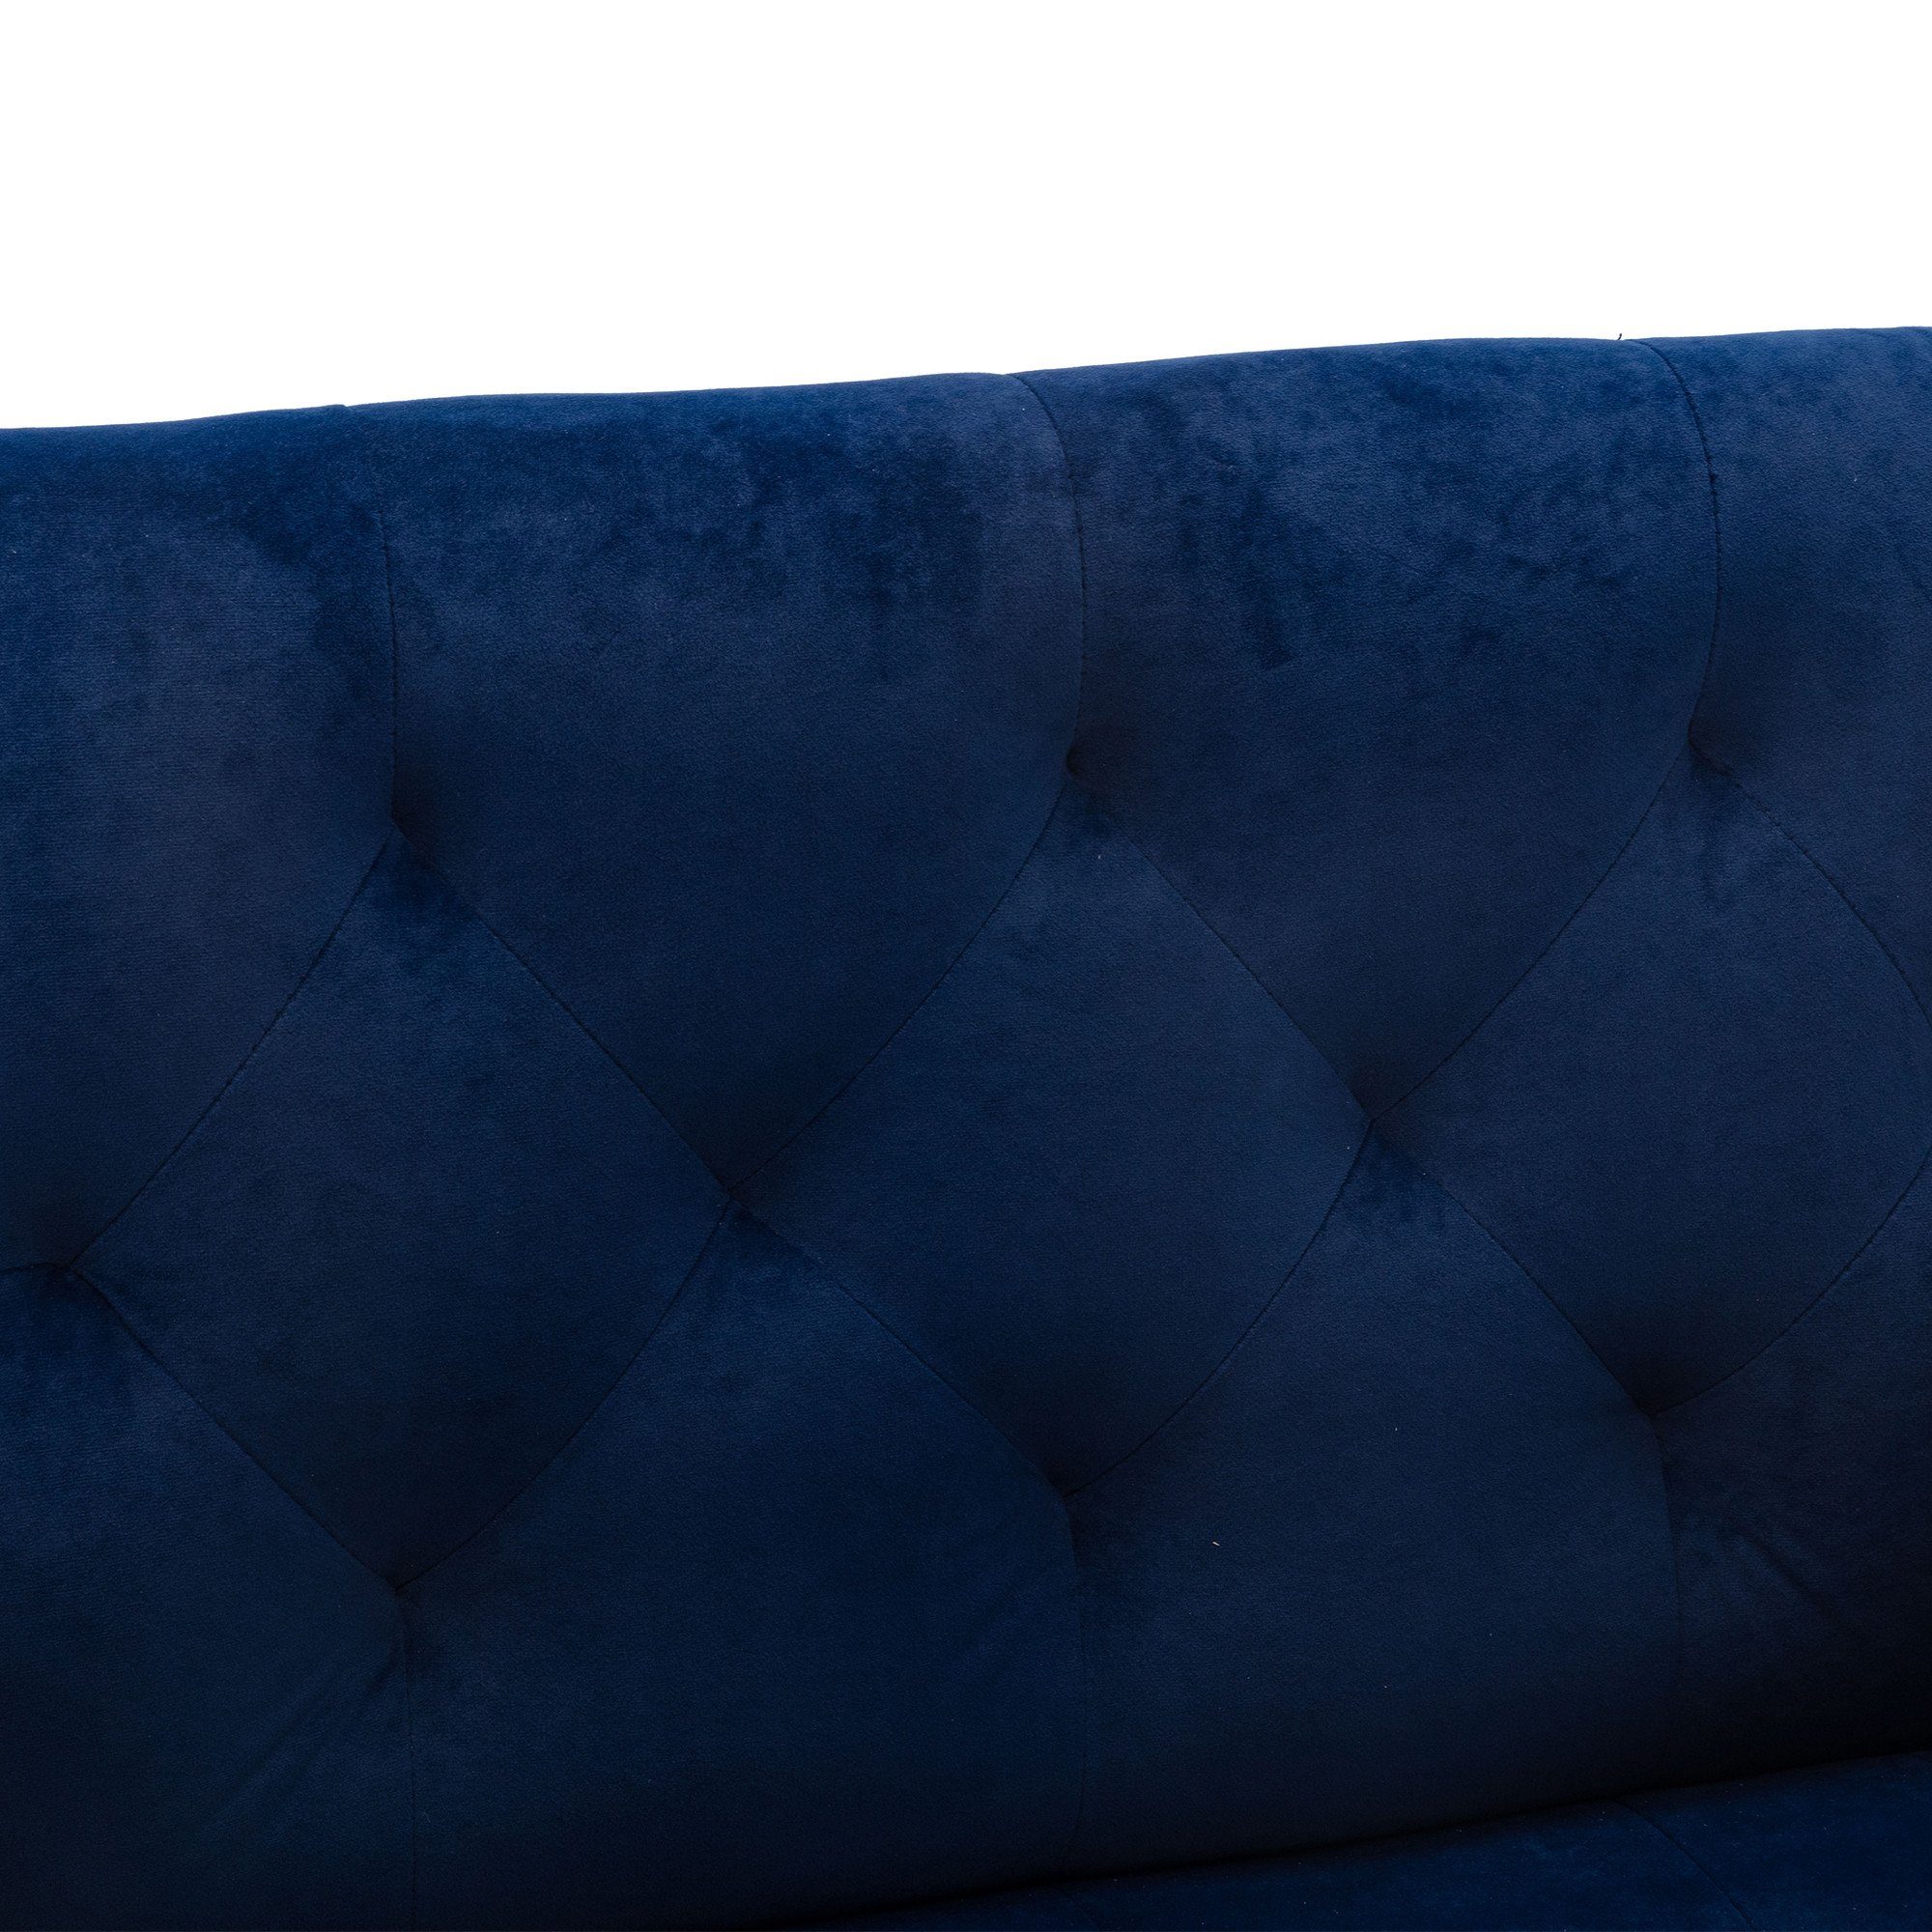 REDOM Esszimmerstuhl Freizeitsessel Stuhl, Füßen,Vierbeiniger mit blau roségoldenen Akzentstuhl